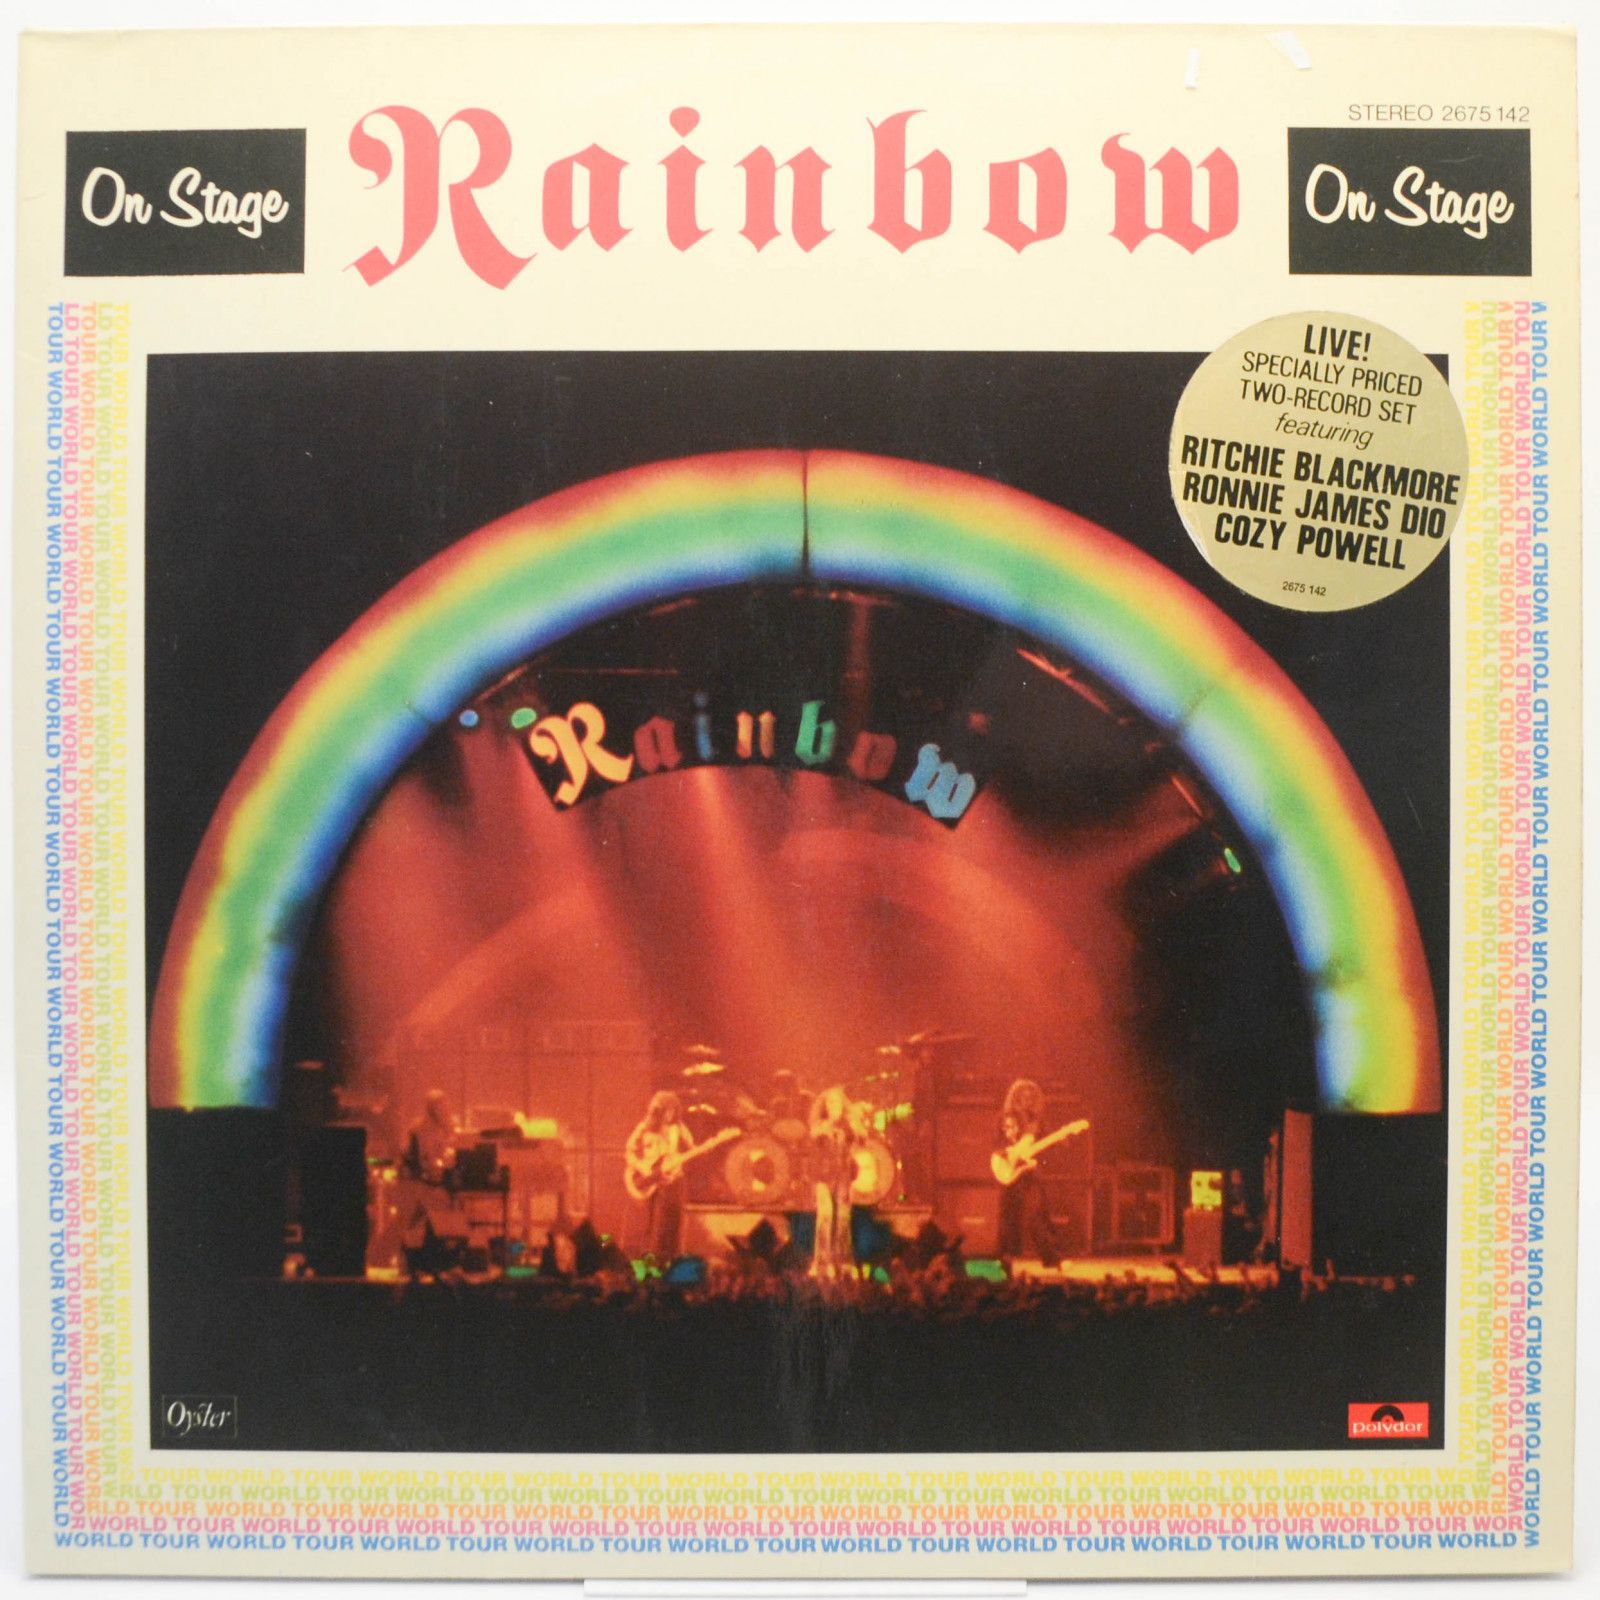 Rainbow — On Stage (2LP), 1977